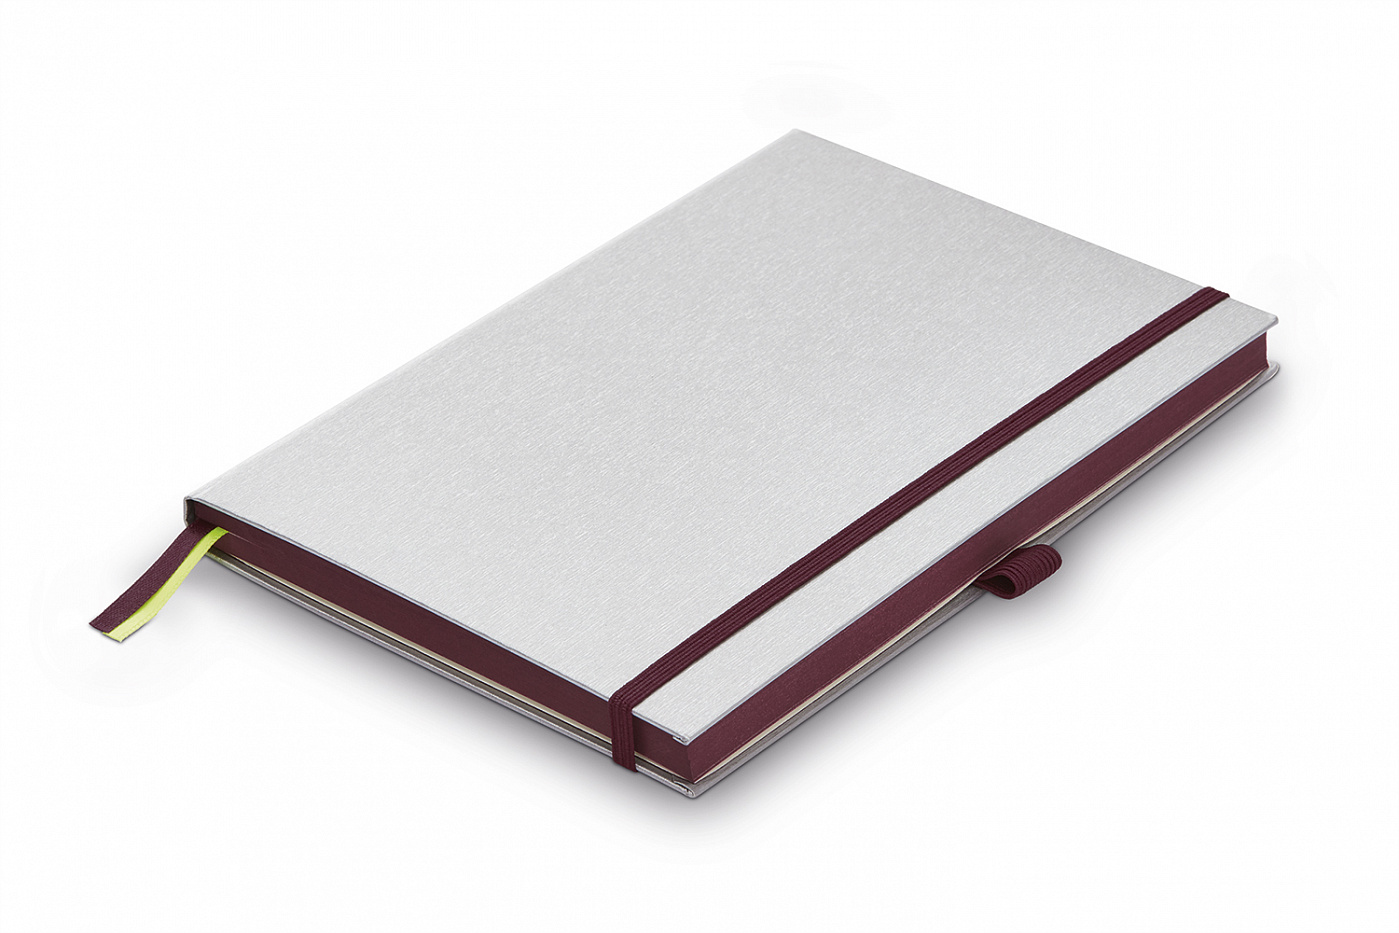 Записная книжка LAMY А6 192 стр, жесткая обложка серебристого цвета, обрез пурпурный